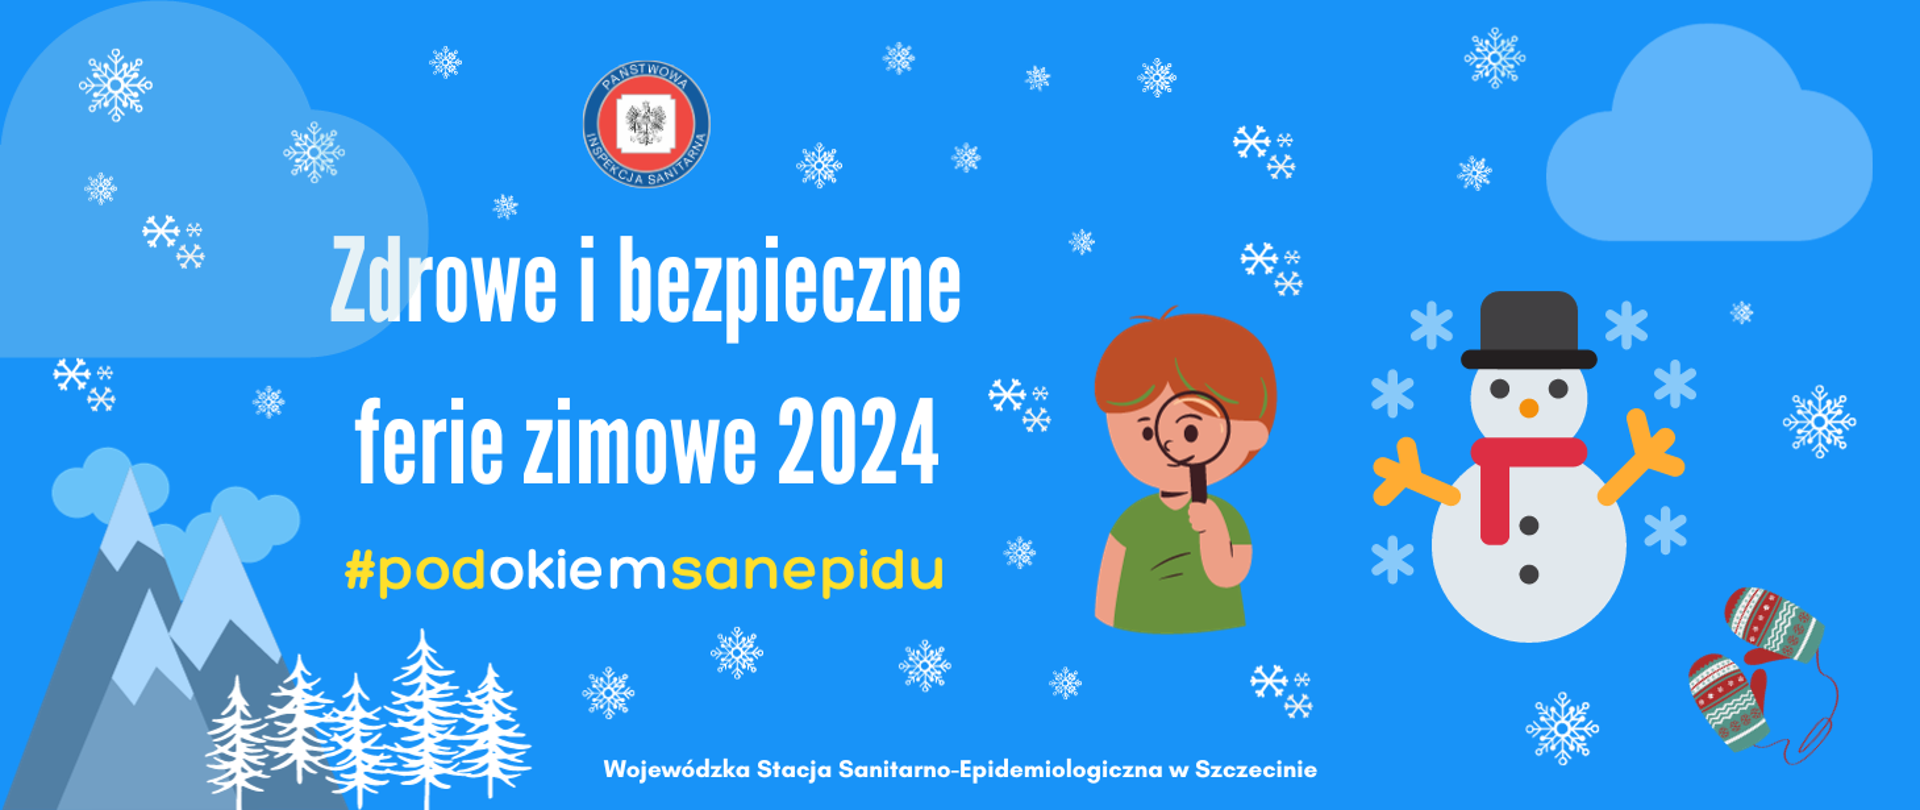 Grafika w błękitnym kolorze z chmurkami i śnieżynkami, od prawej para rękawiczek, bałwanek chłopiec patrzący przez lupę, logo Państwowej Inspekcji Sanitarnej, poniżej biały napis Zdrowe i bezpieczne ferie zimowe 2024 pod spodem #podokiemsanepidu i Wojewódzka Stacja Sanitarno-Epidemiologiczna w Szczecinie, w dalszej części ośnieżone góry i drzewa.